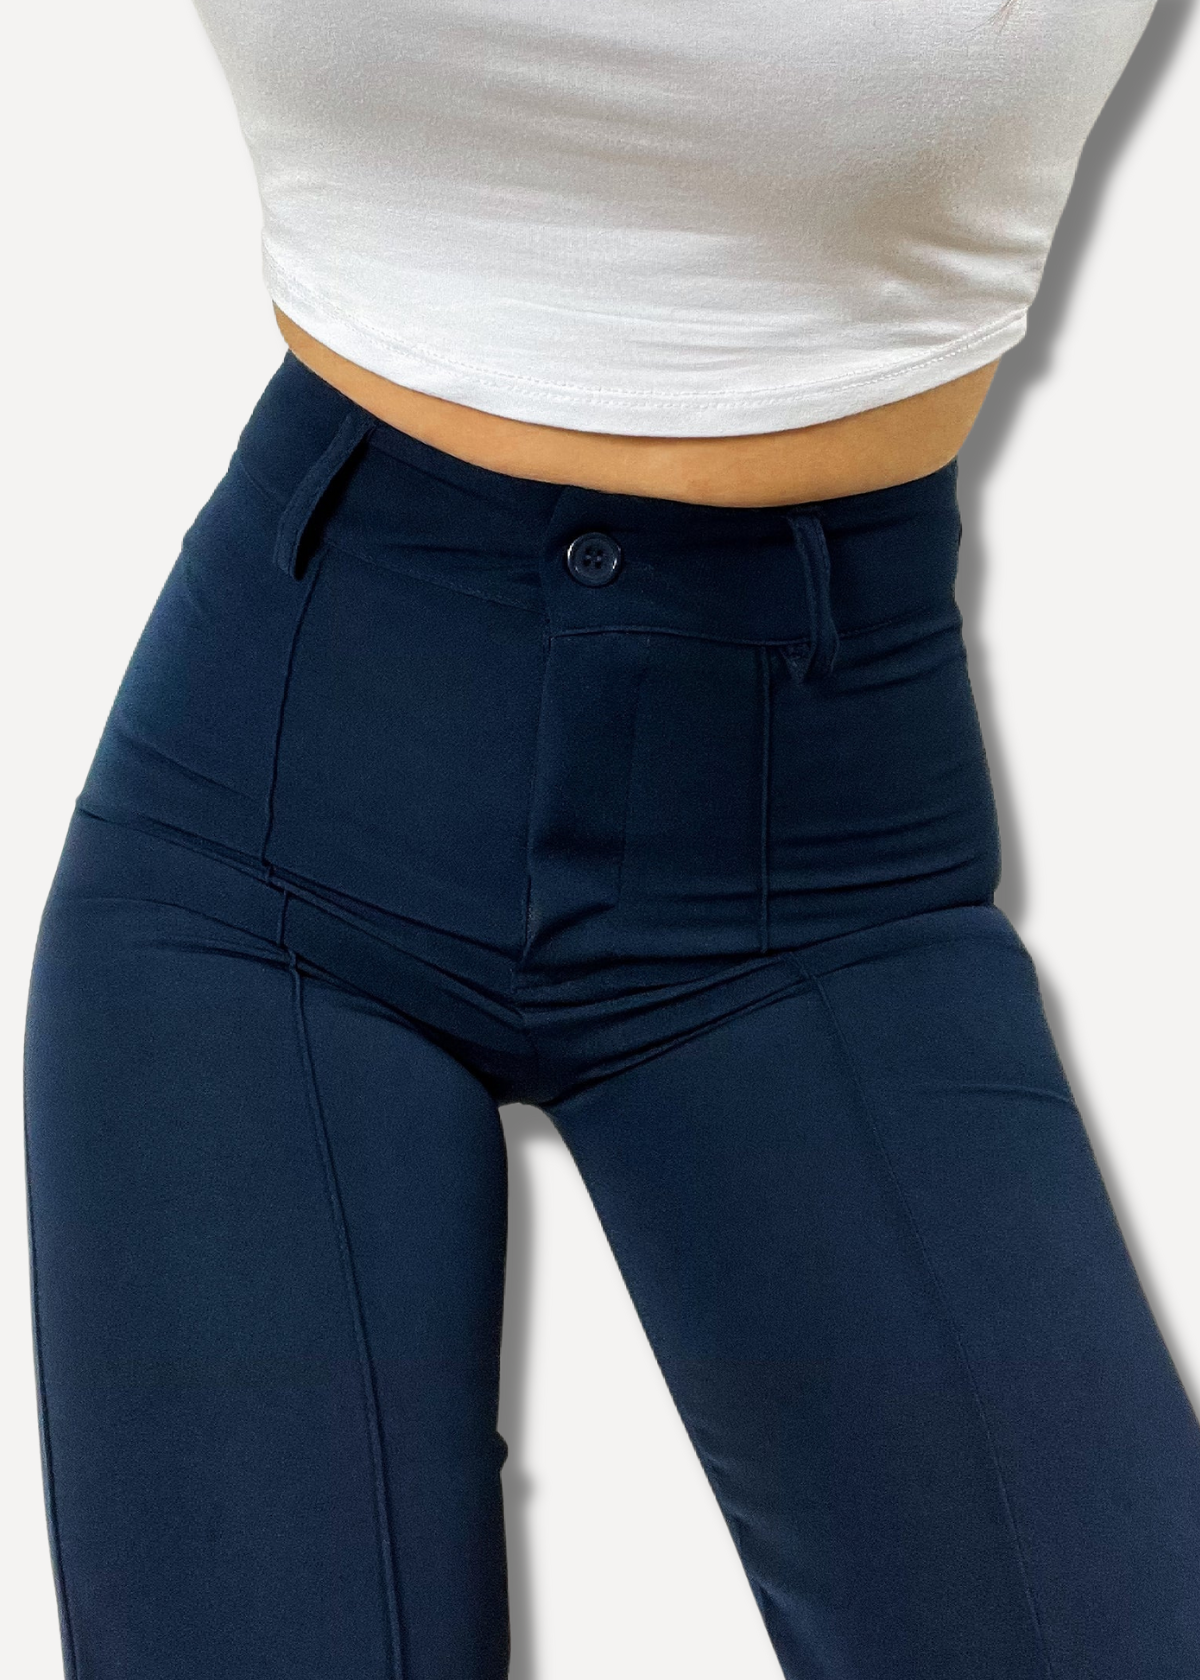 Pantalon droit avec pli pressé bleu nuit (TALL)